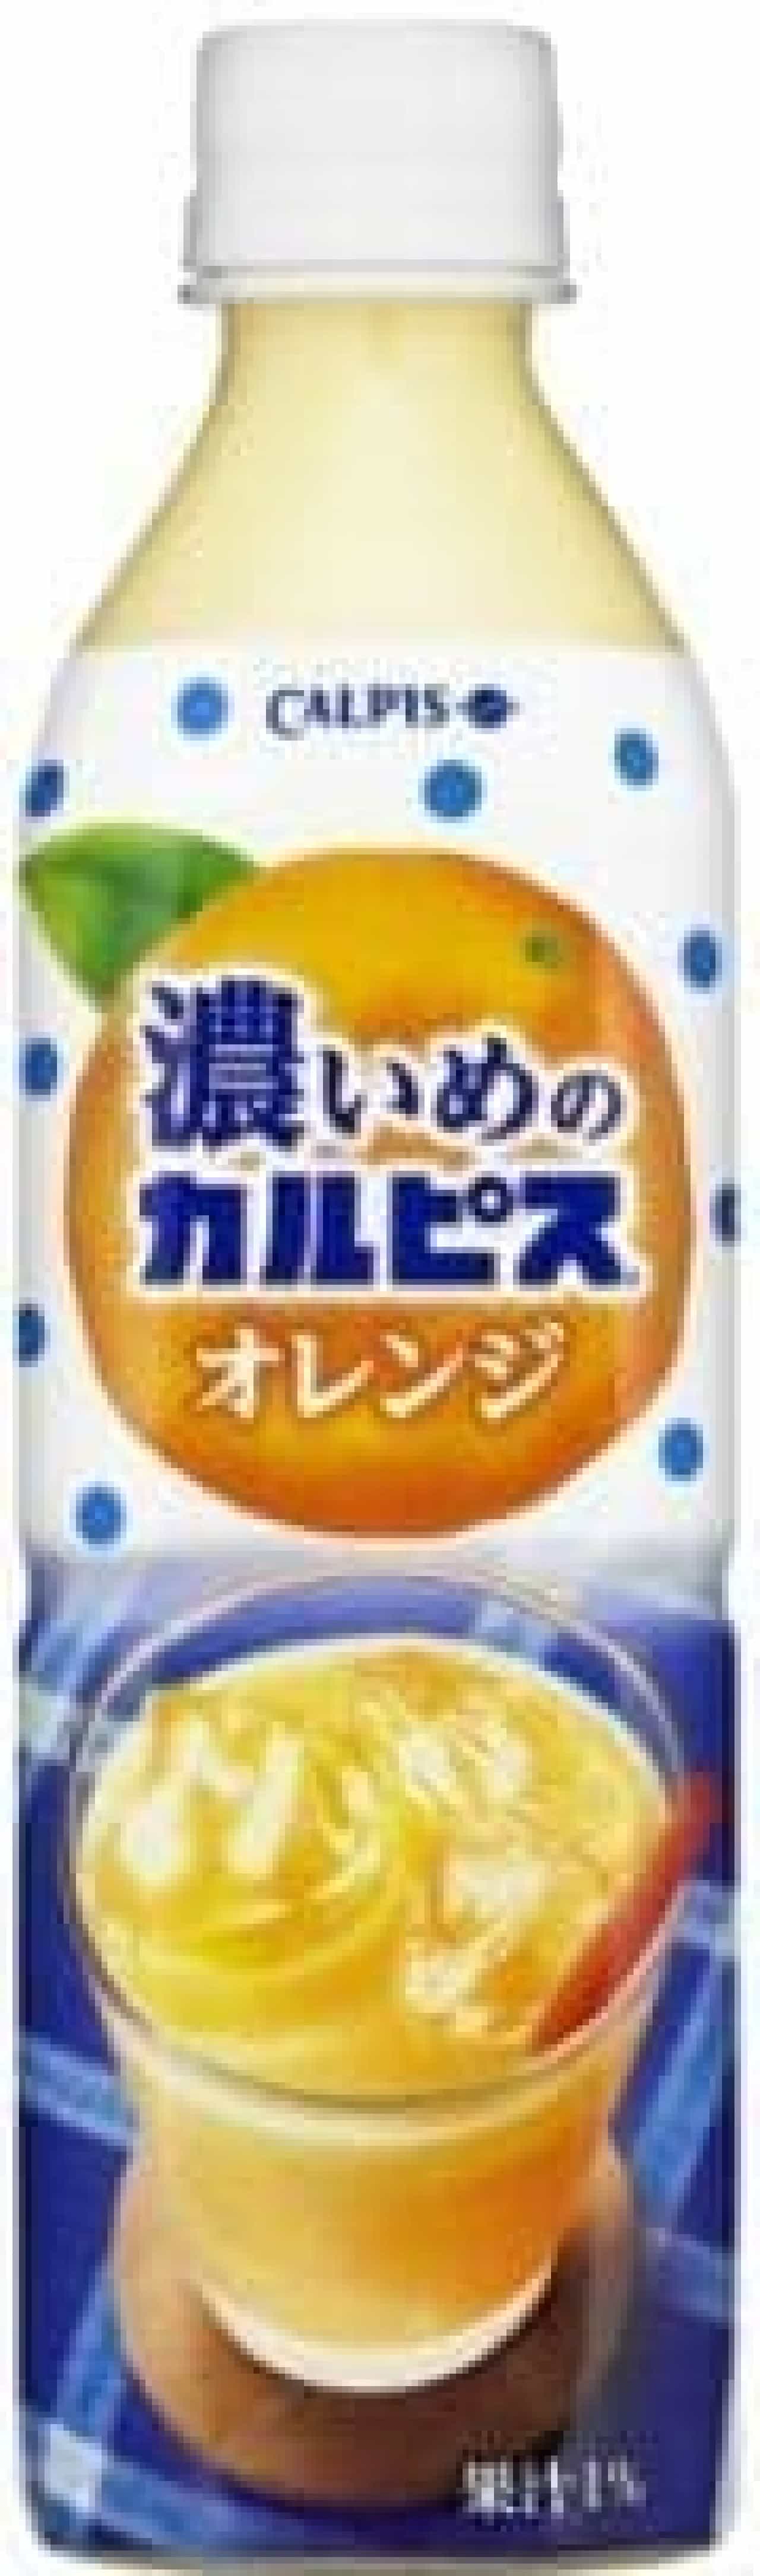 アサヒ飲料「濃いめの『カルピス』オレンジ」